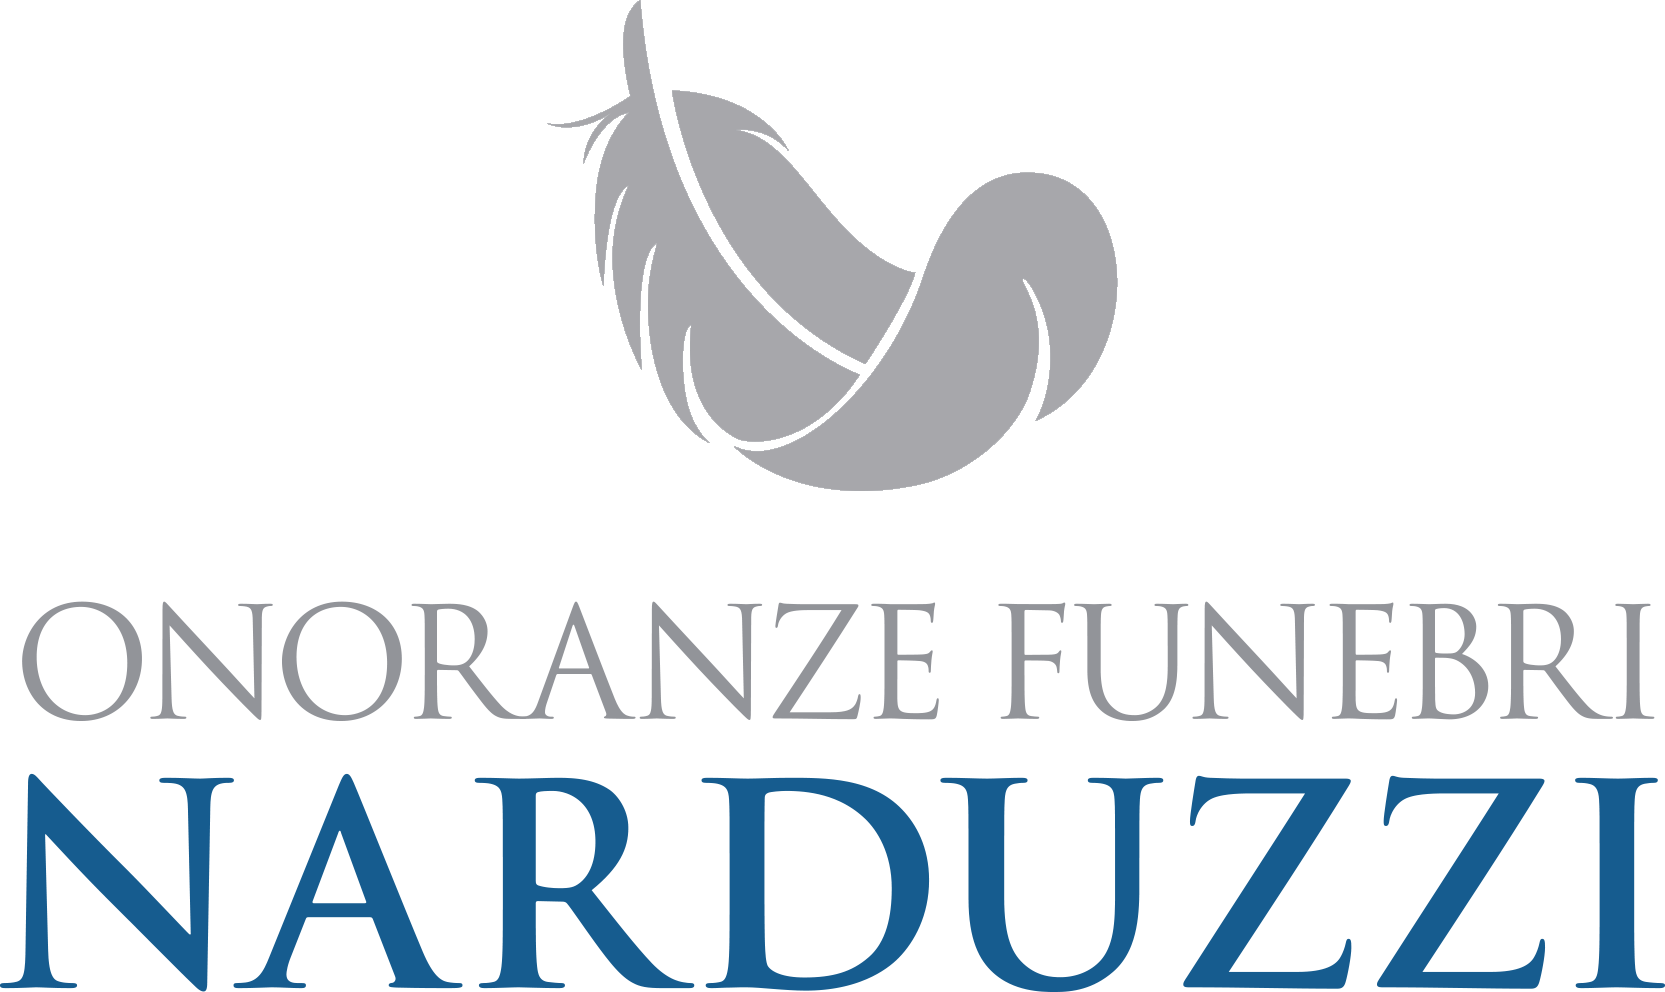 Onoranze Funebri Narduzzi logo